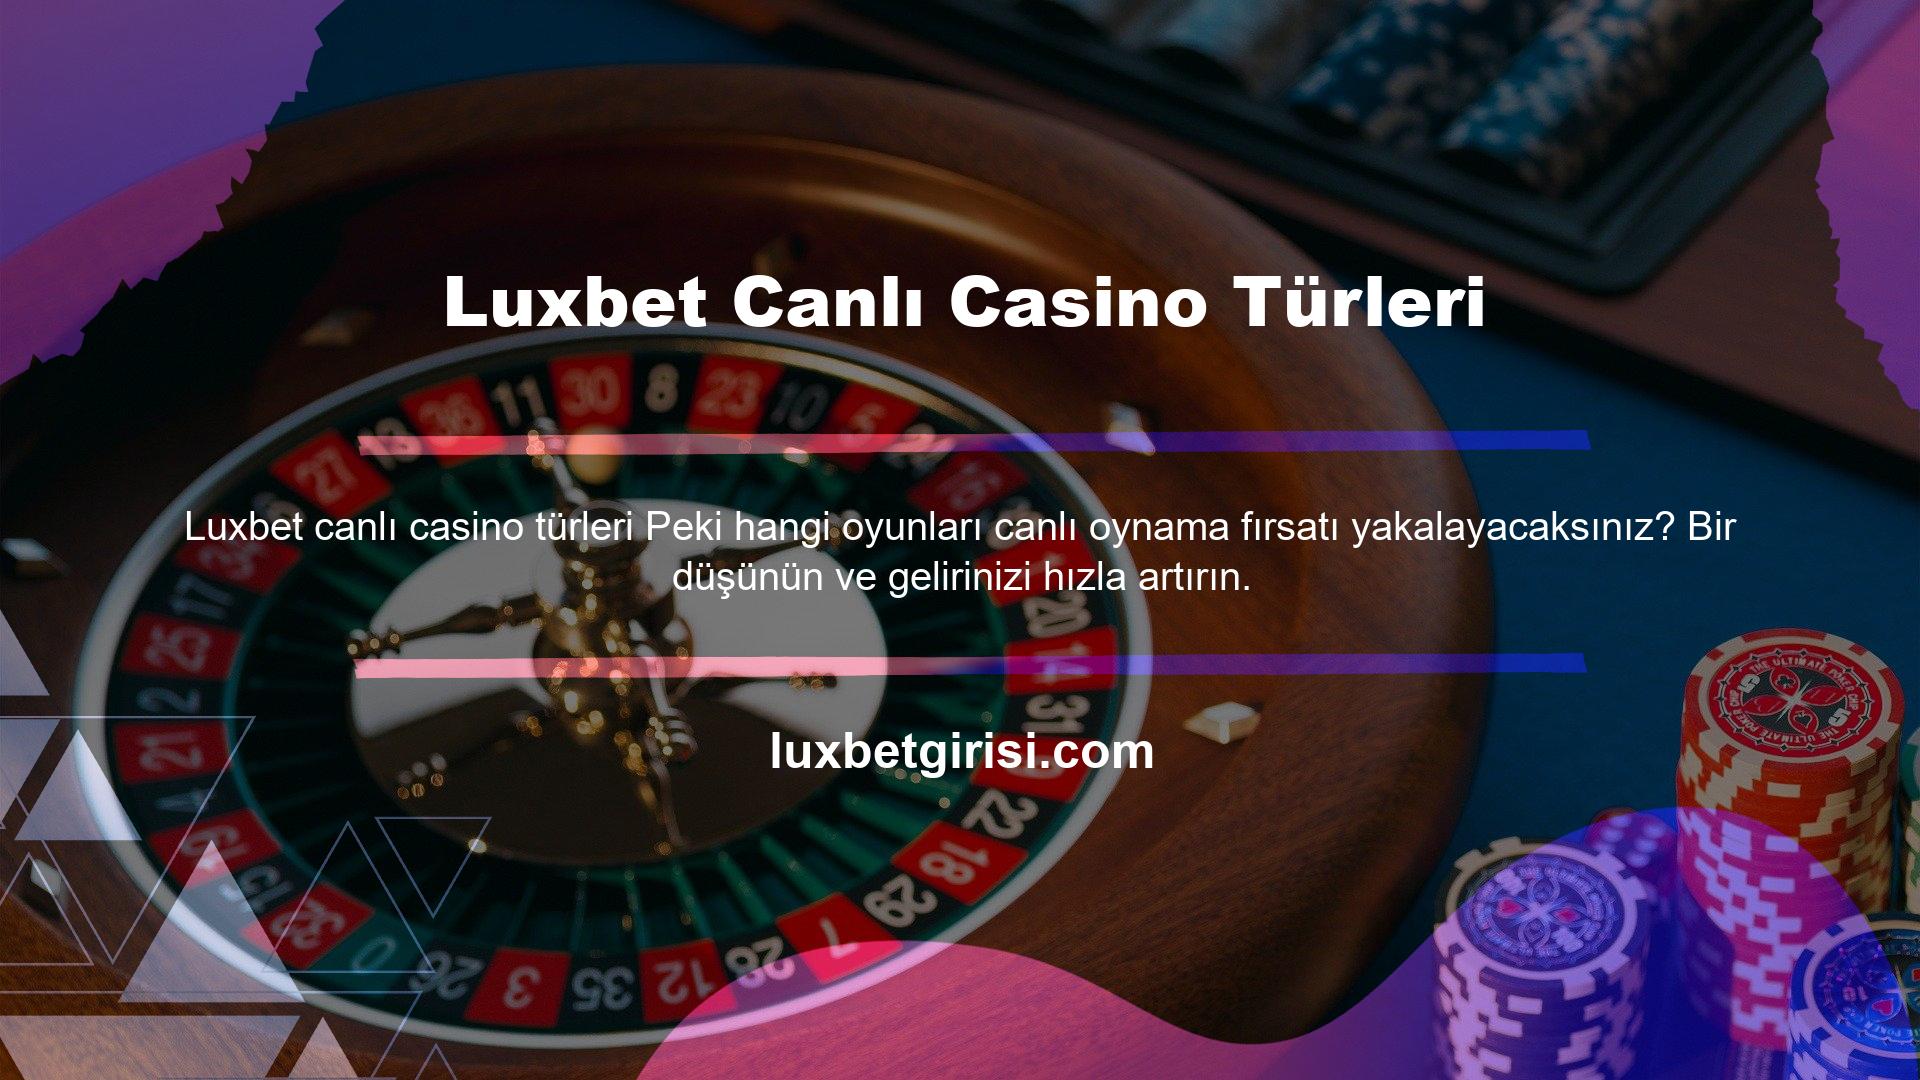 Luxbet Canlı Casino Türleri